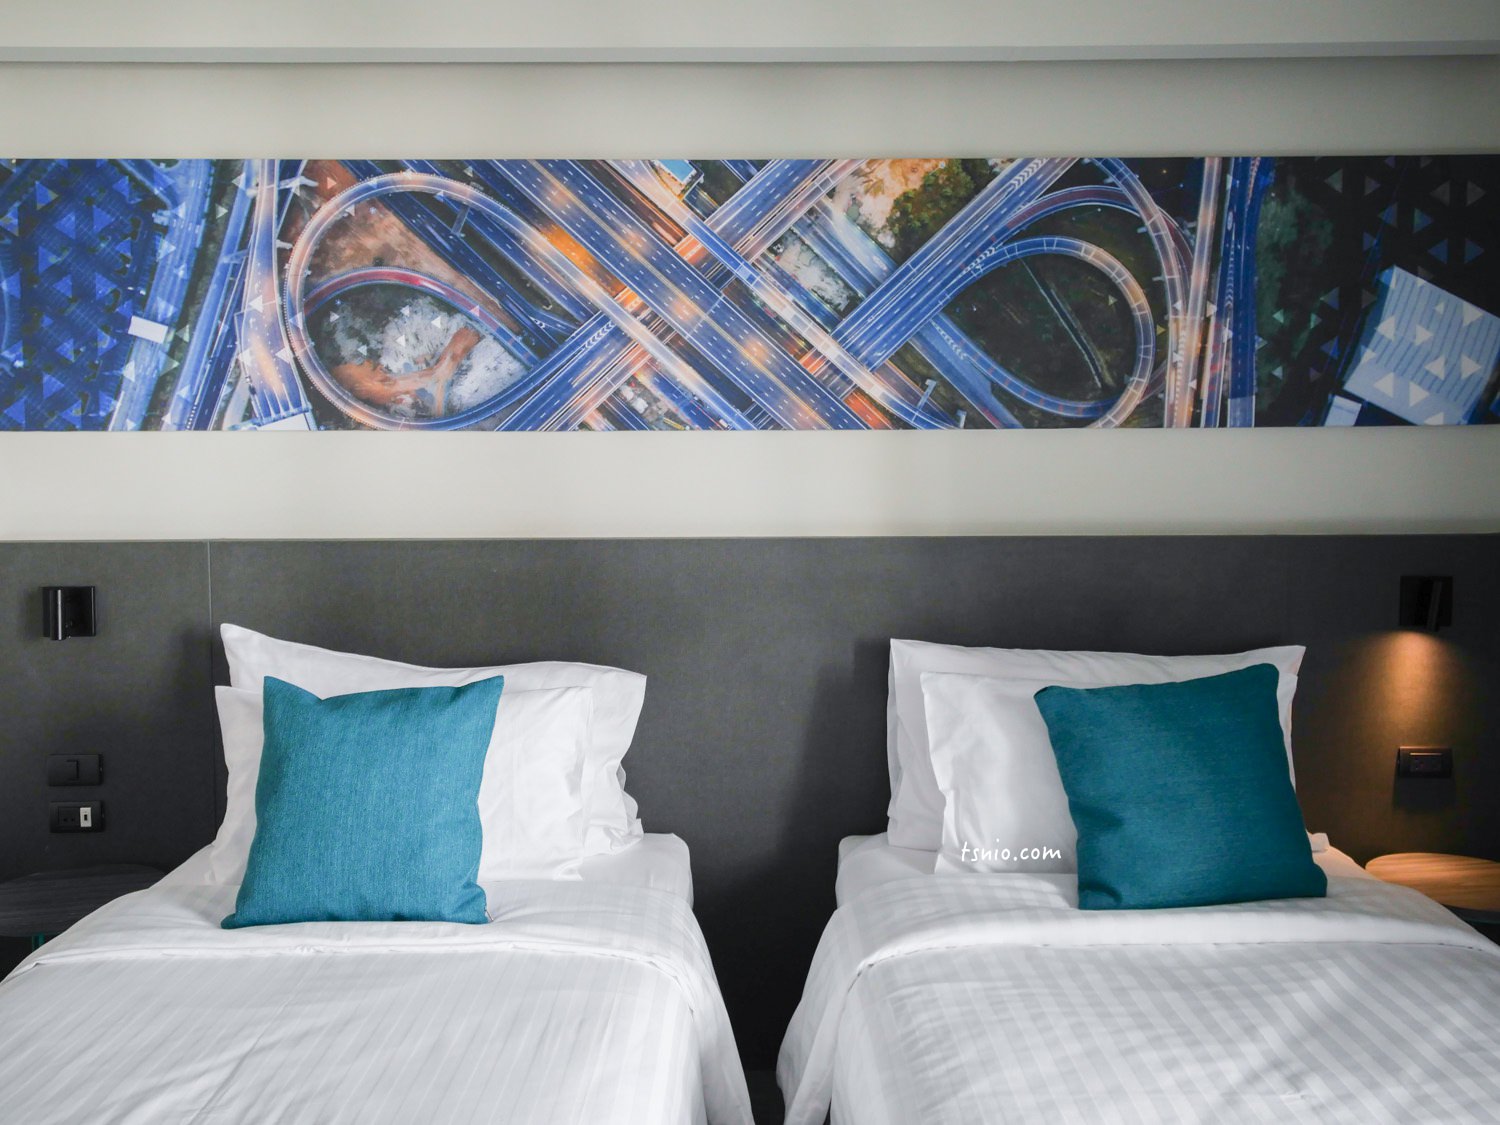 曼谷飯店推薦 X2 Vibe Bangkok Sukhumvit Hotel 平價擁有超值享受設計酒店